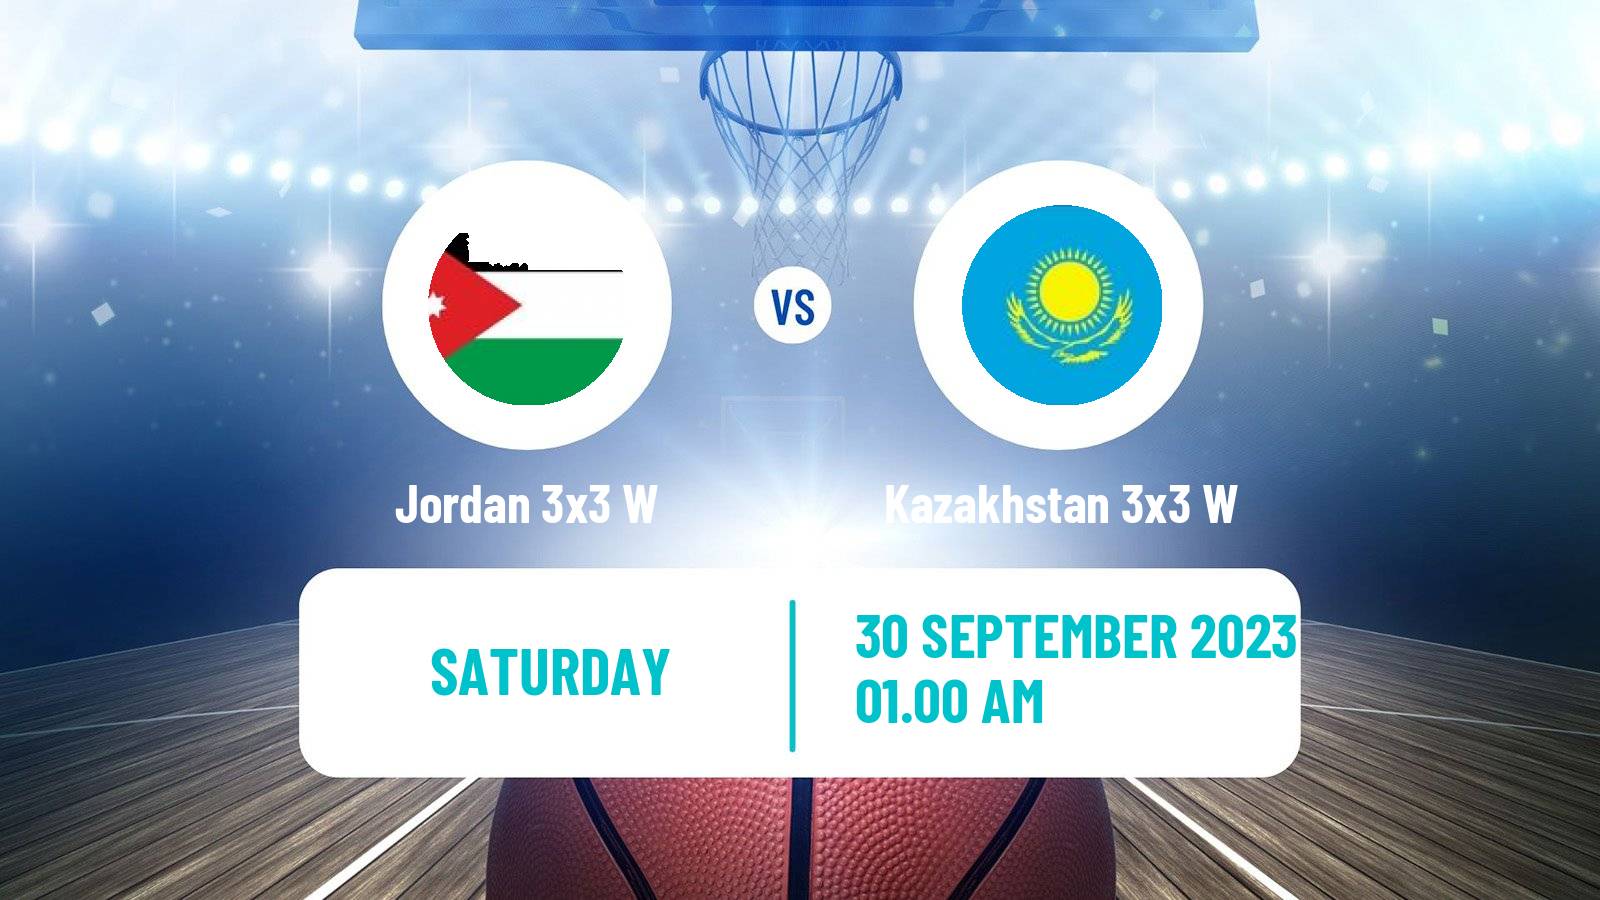 Basketball Asian Games Basketball 3x3 Women Jordan 3x3 W - Kazakhstan 3x3 W